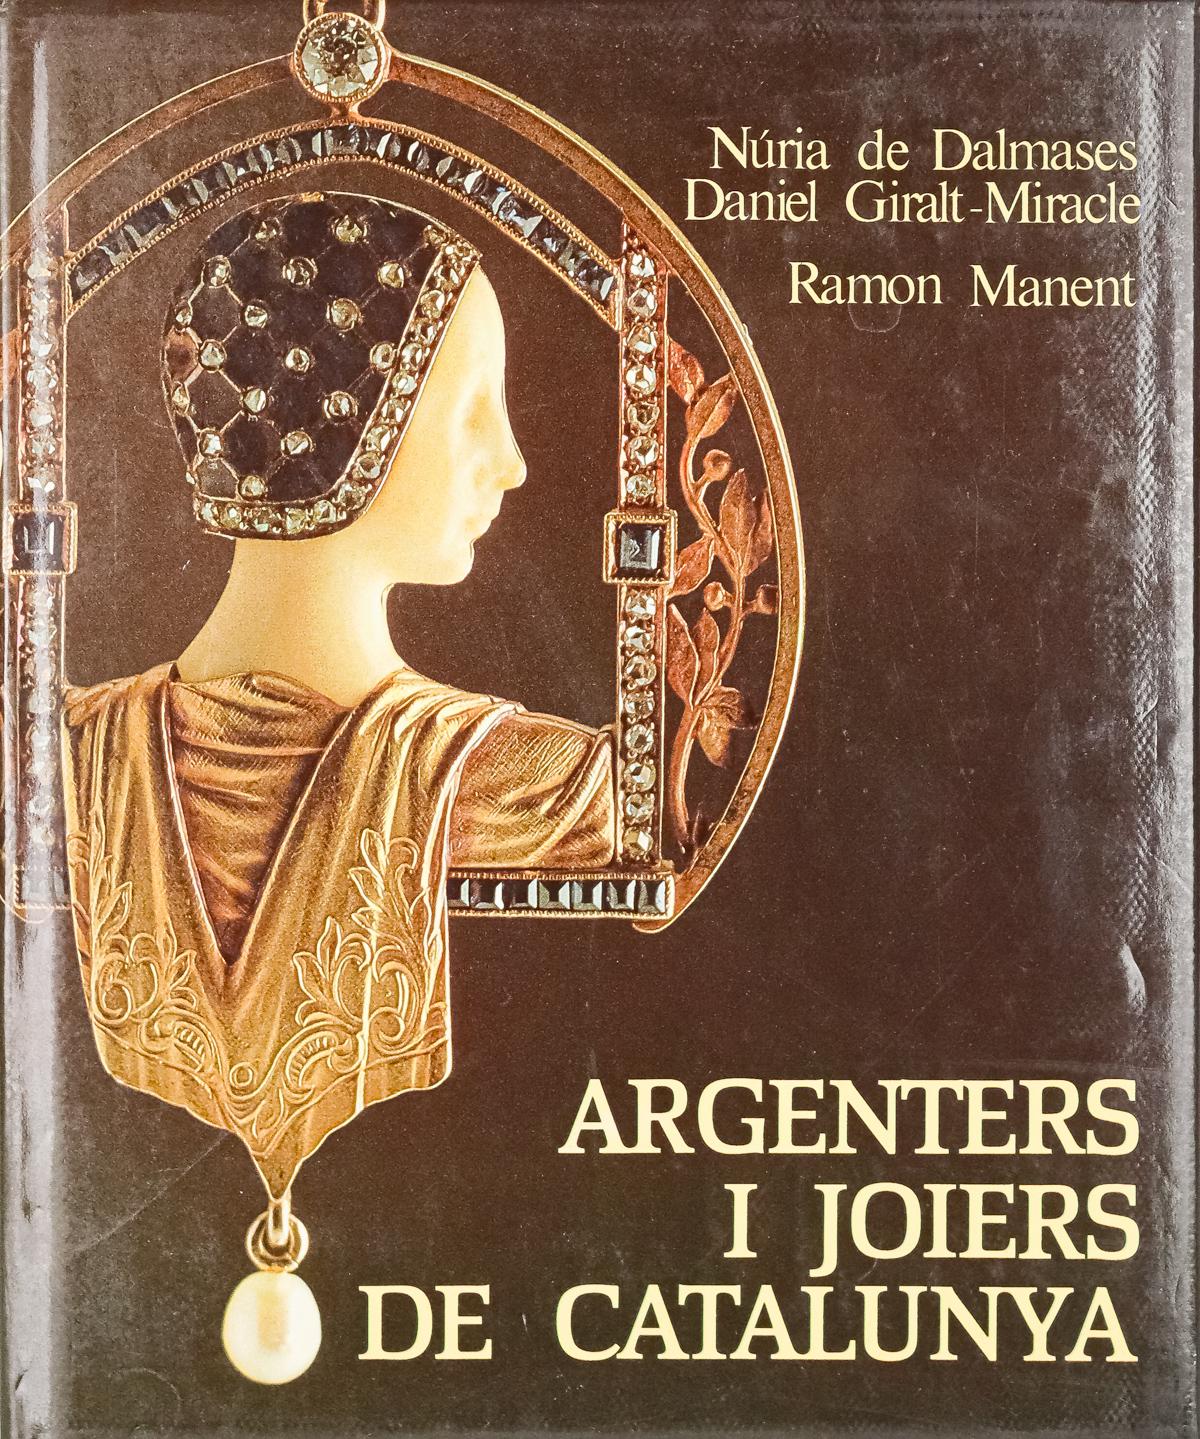 "ARGENTERS I JOIERS DE CATALUNYA"